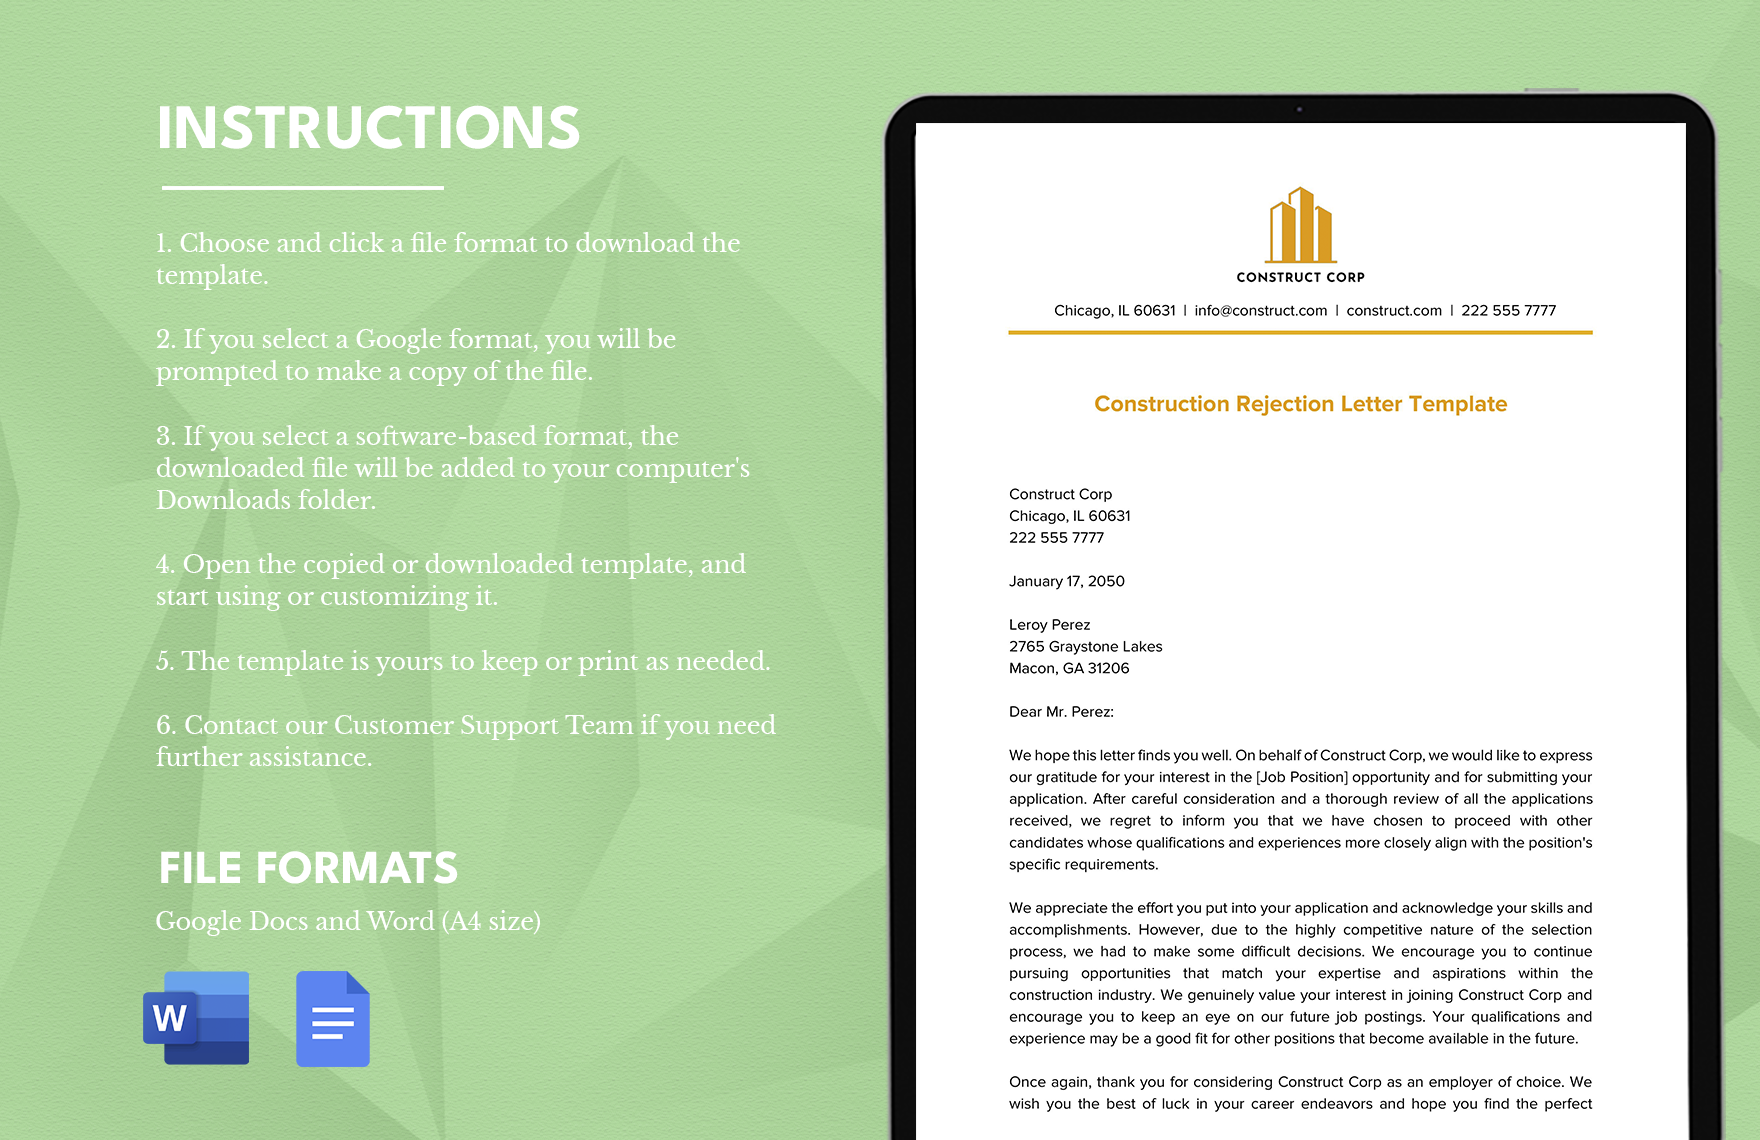 Construction Rejection Letter